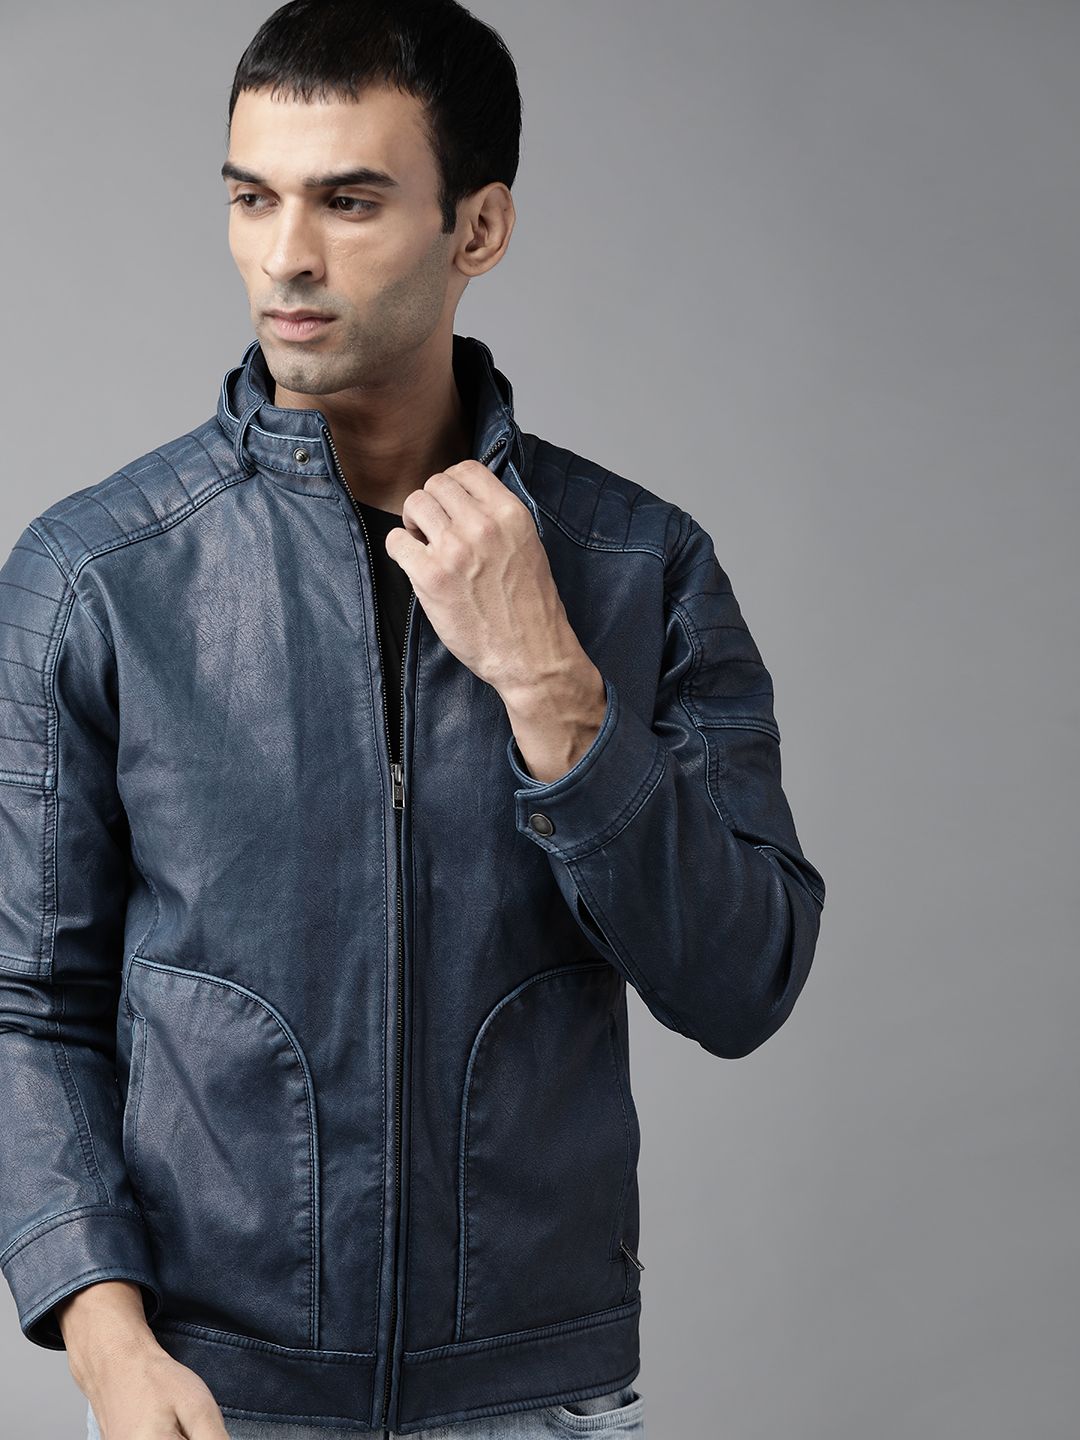 Buy Roadster Men Navy Blue Solid Denim Jacket - Jackets for Men